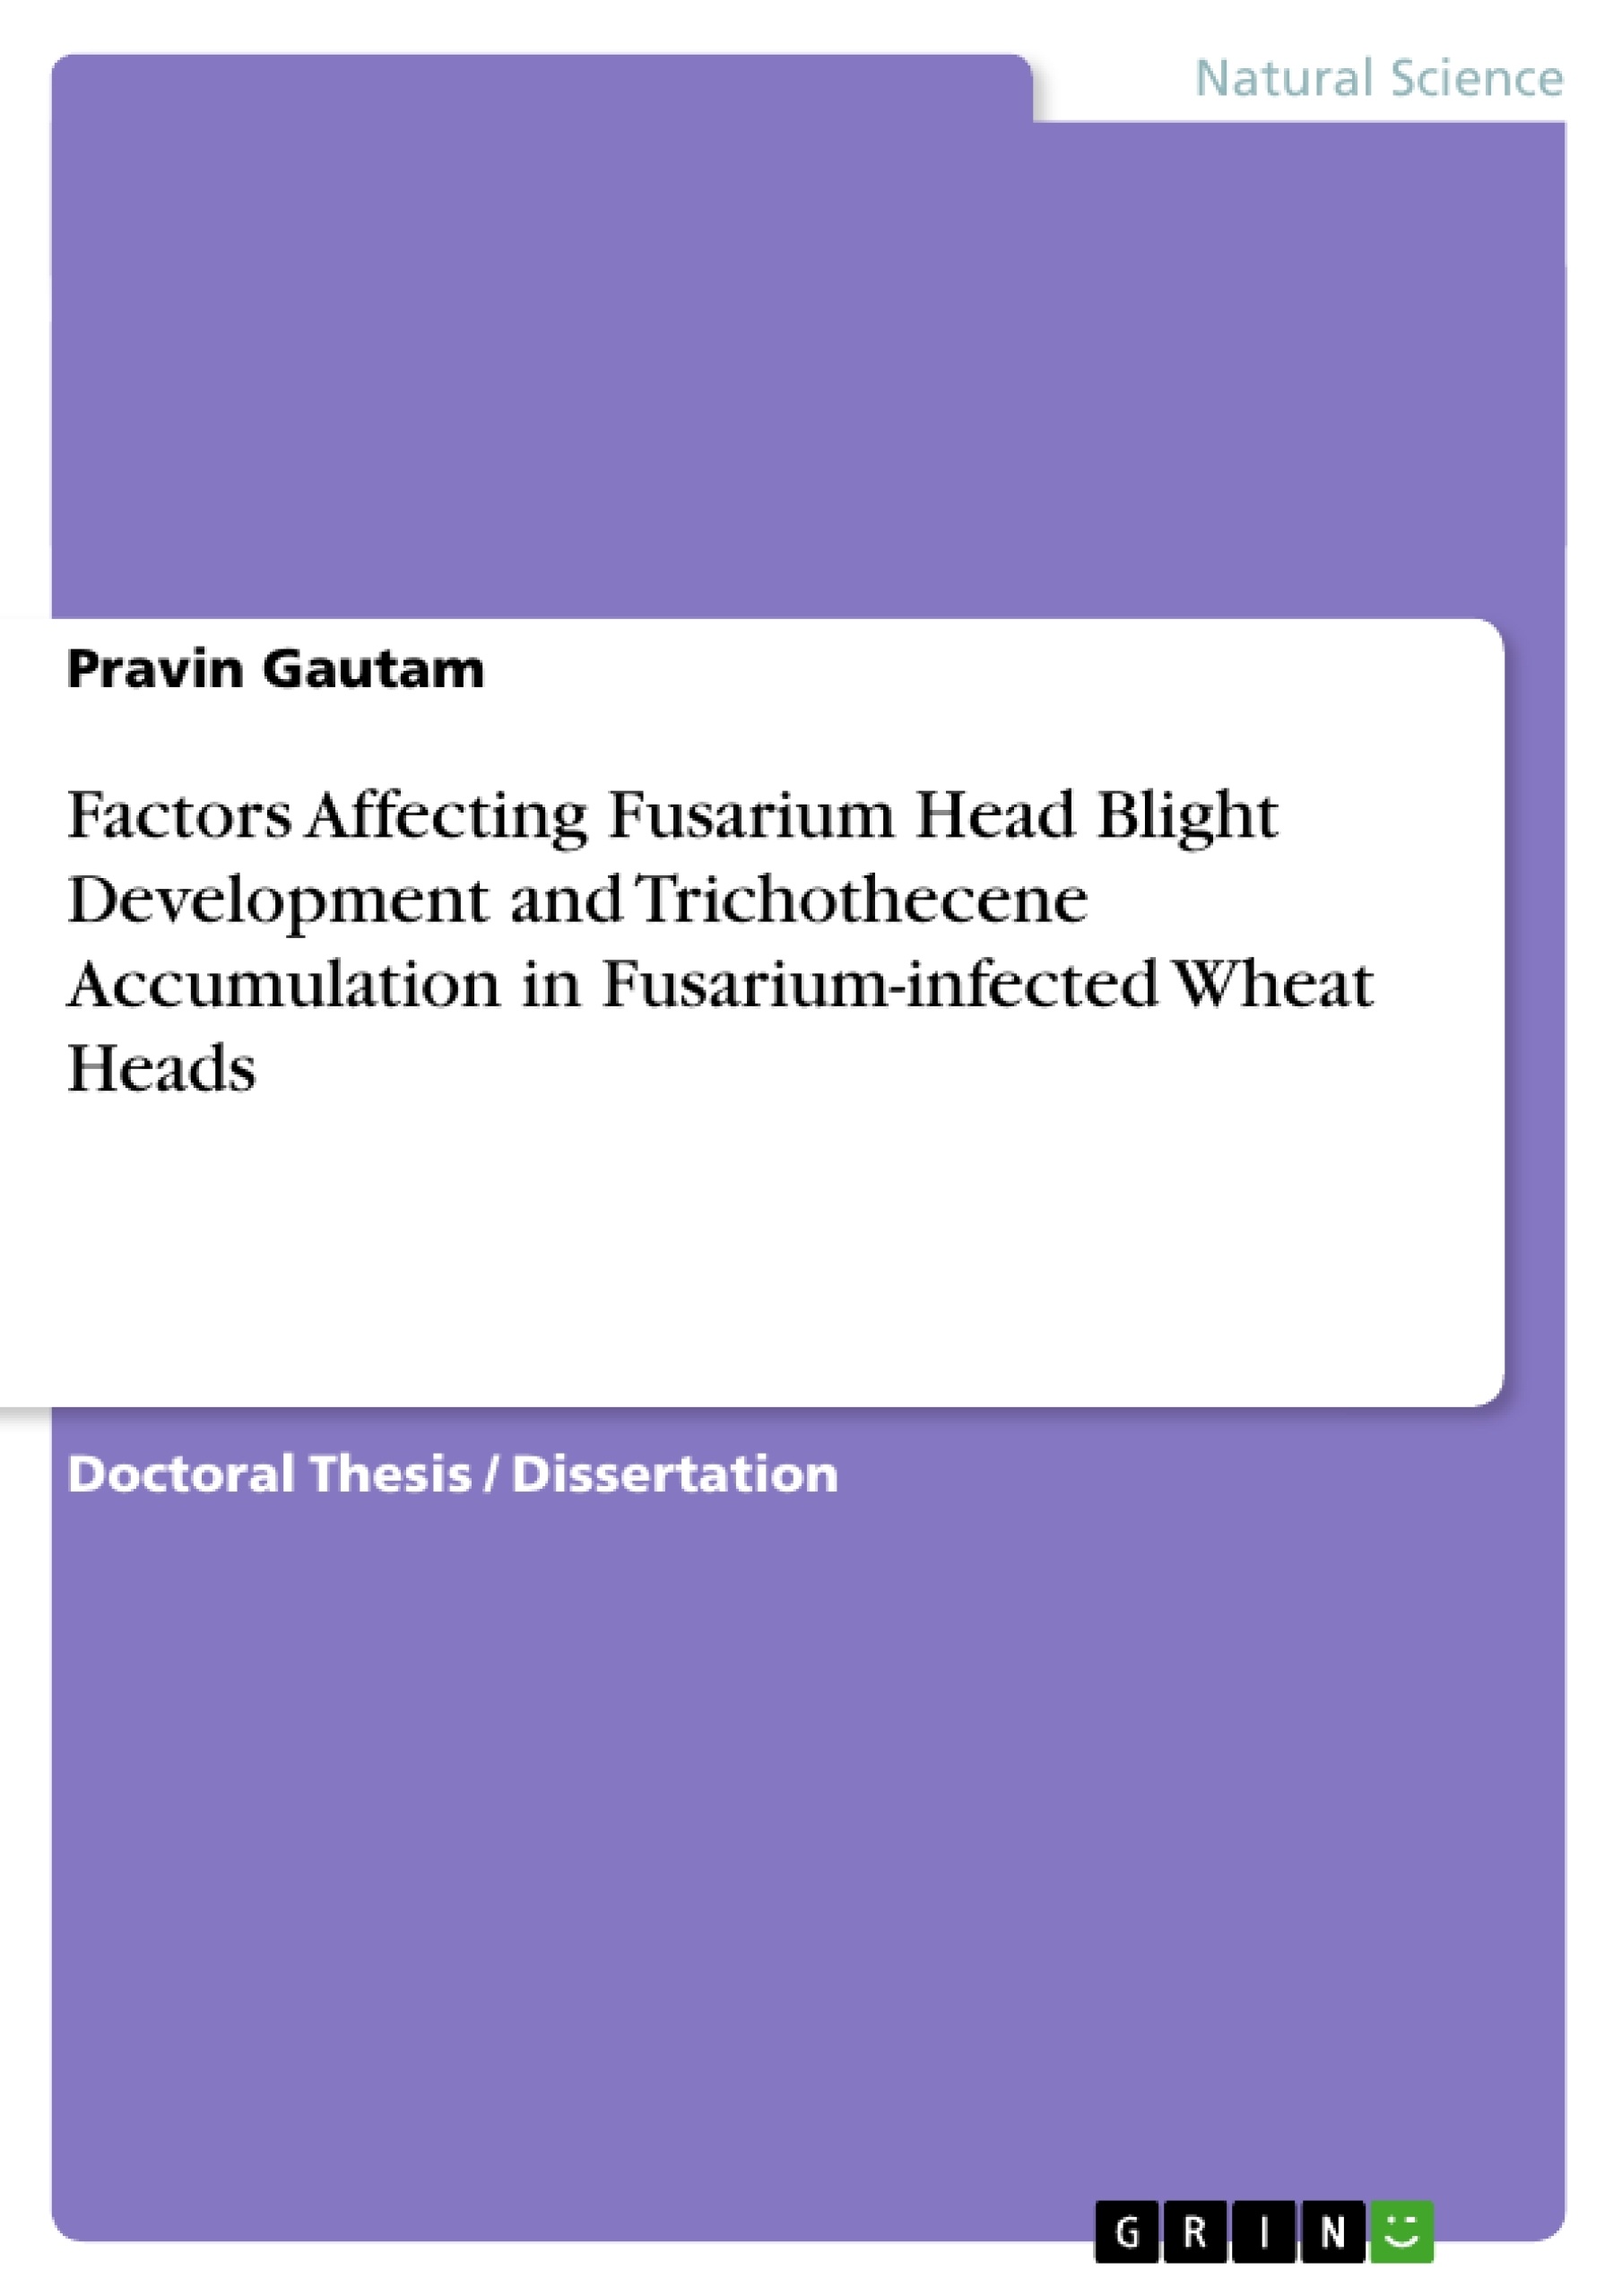 Title: Factors Affecting Fusarium Head Blight Development and Trichothecene Accumulation in Fusarium-infected Wheat Heads